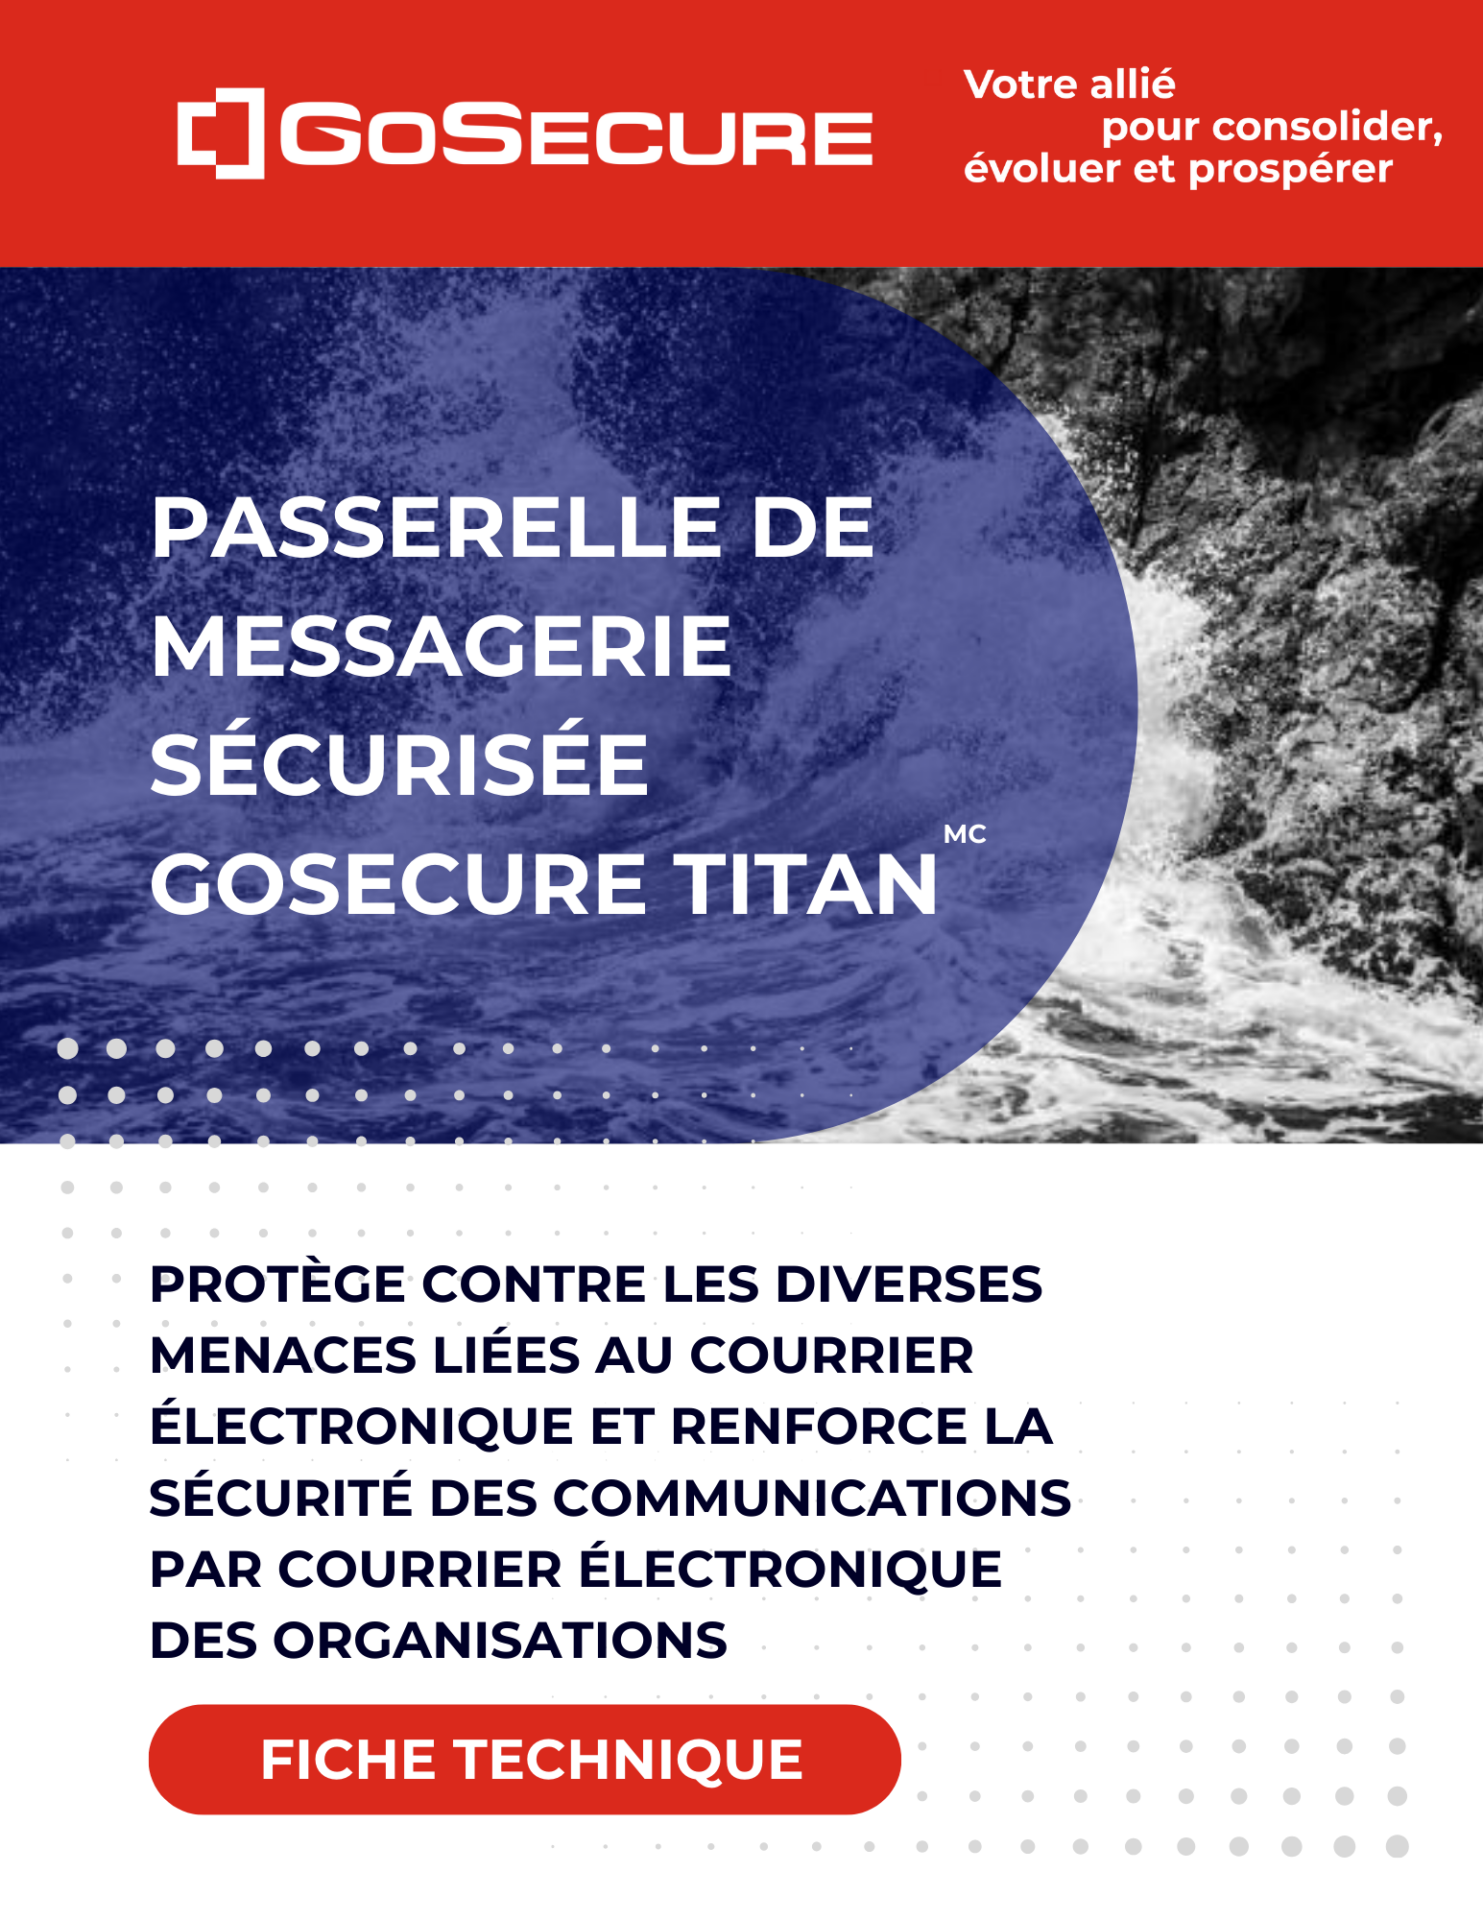 Image de couverture-Fiche technique-Passerelle de messagerie sécurisée GoSecure Titan